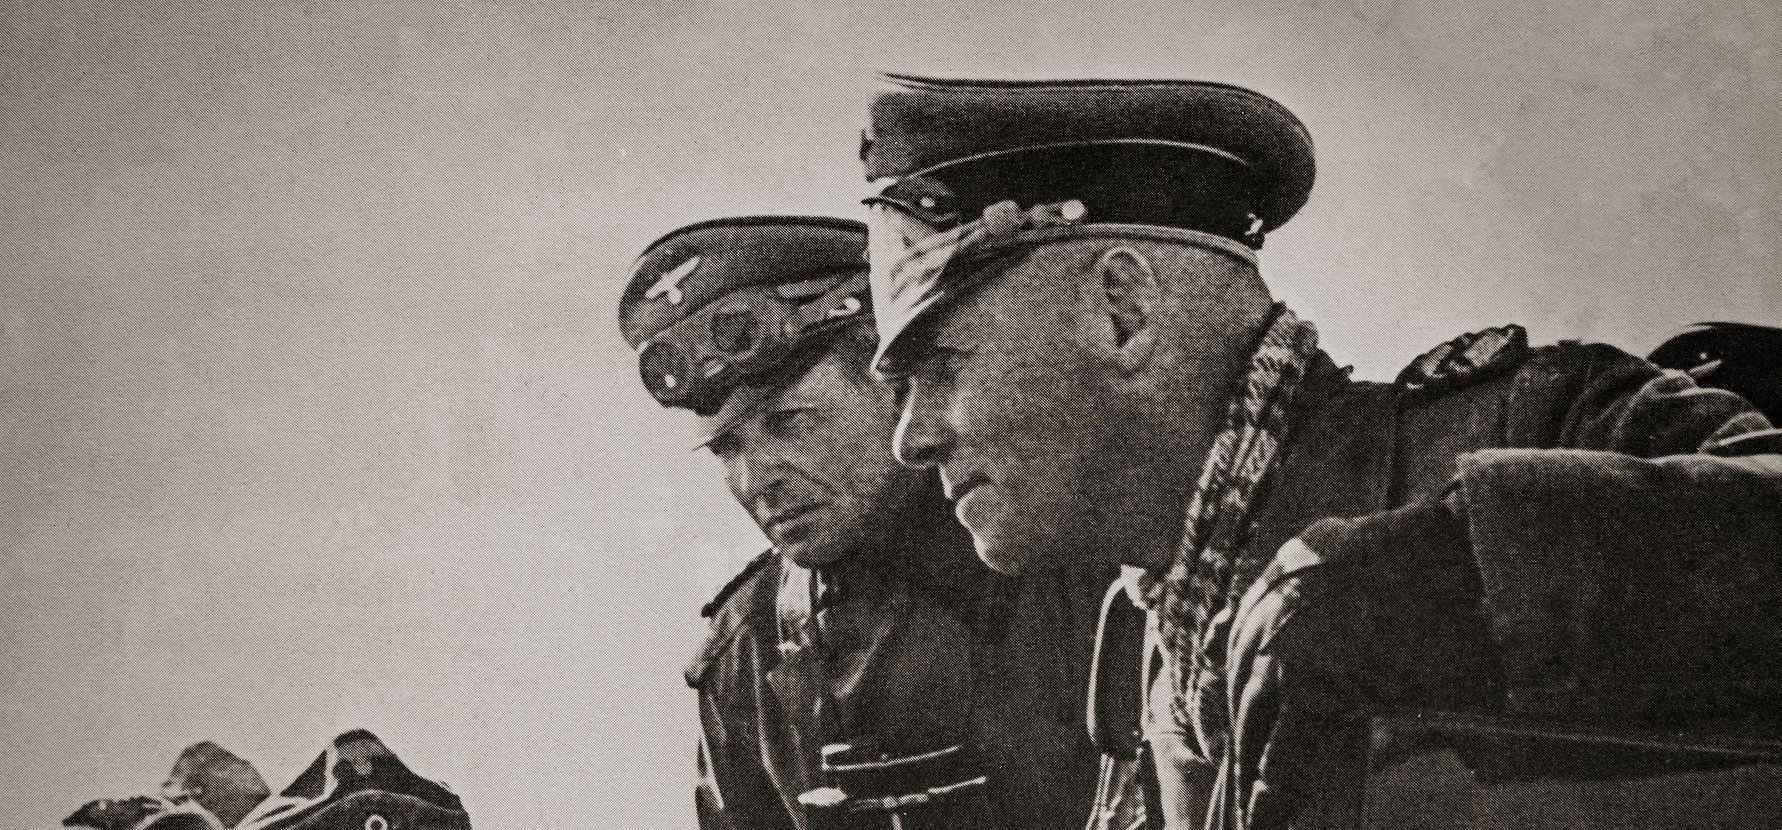 A magyar kommandós, aki a náci Rommellel teázott